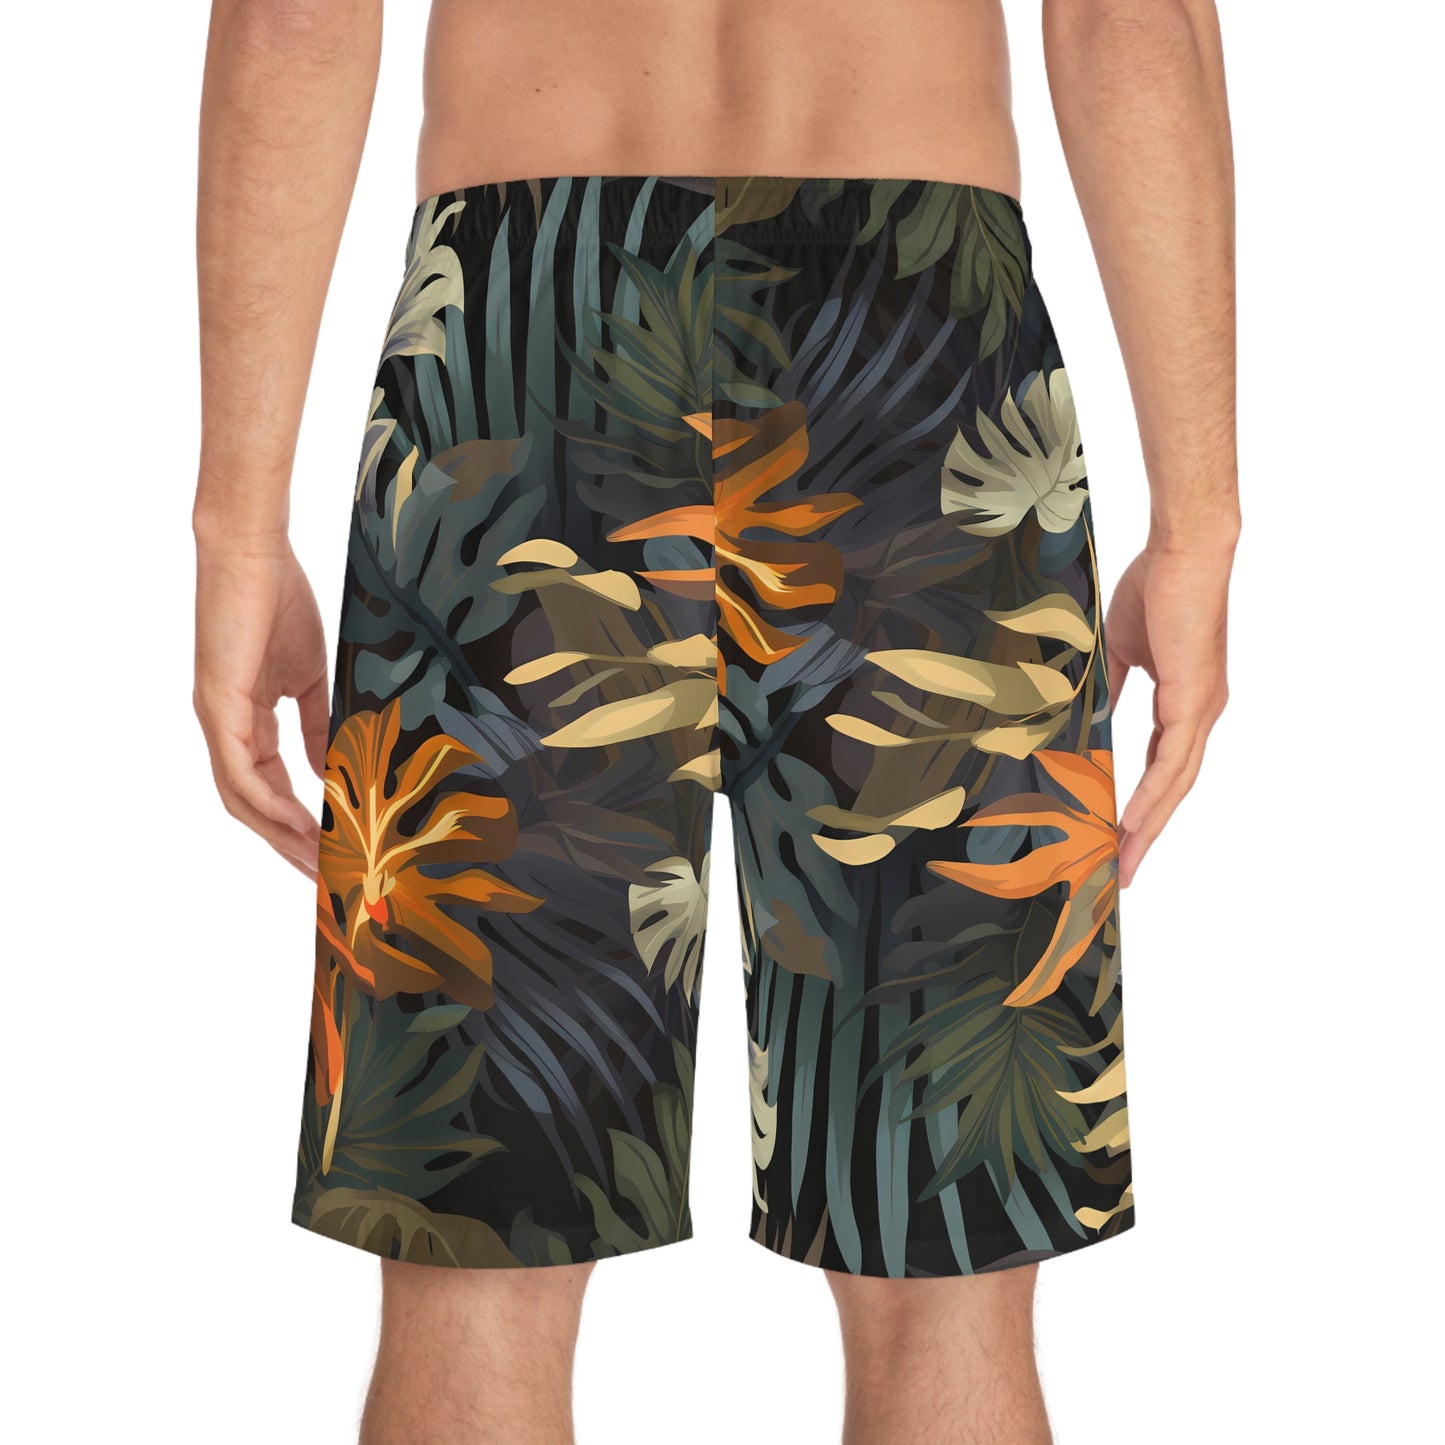 Summertime Jungle Board Shorts